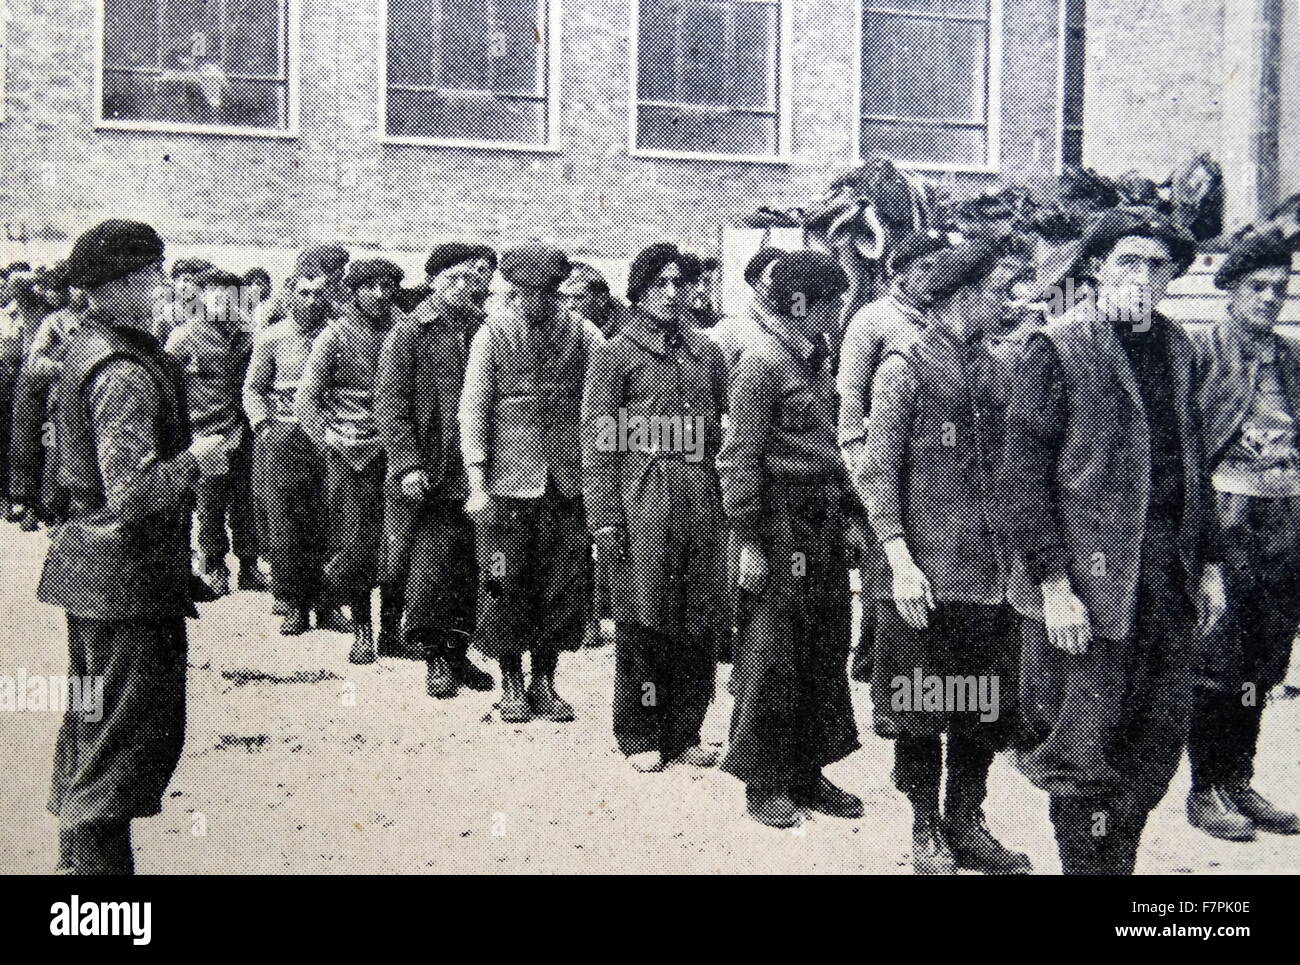 Soldats carlistes sur une place d'armes pendant la guerre civile espagnole. Datée 1936 Banque D'Images